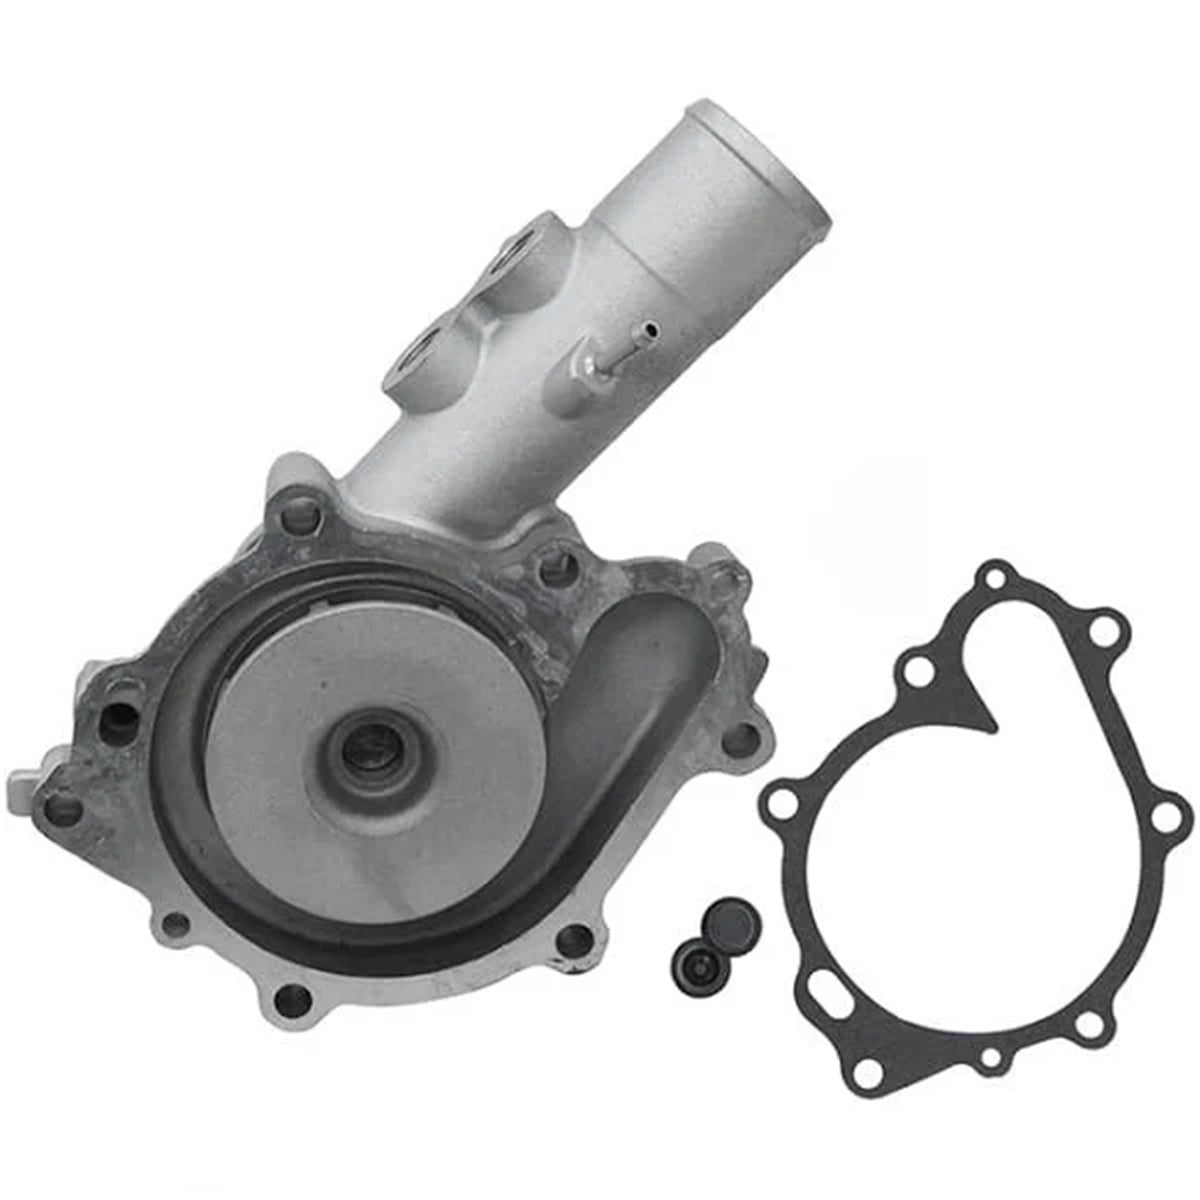 123900-42000 Water Pump for Komatsu 4D106 Engine - Sinocmp